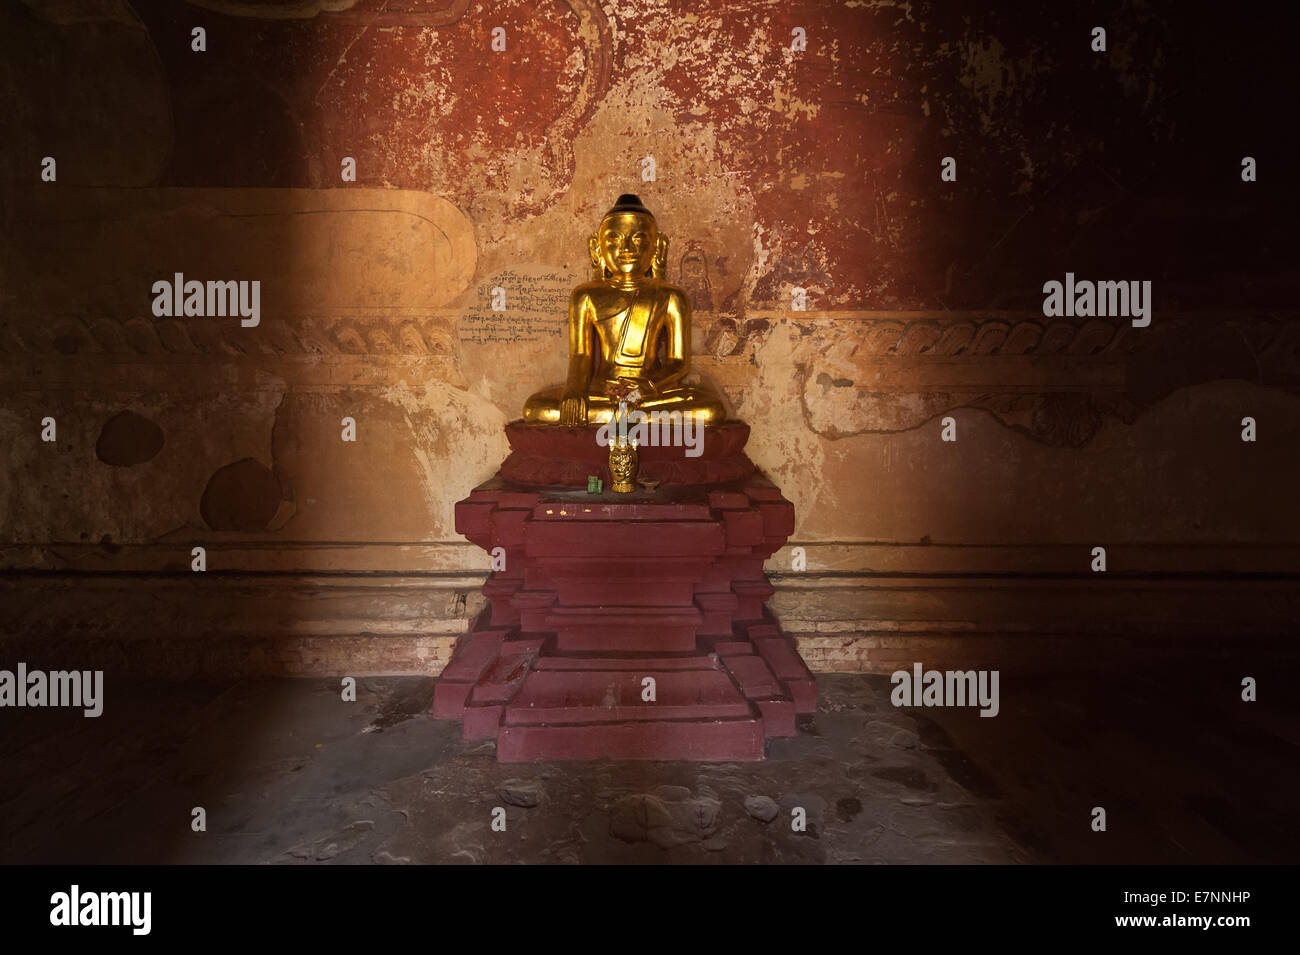 Alte Architektur der alten buddhistischen Tempel im Königreich Bagan, Myanmar (Burma). Goldene Buddha-Statue in einer Pagode Ruinen Stockfoto